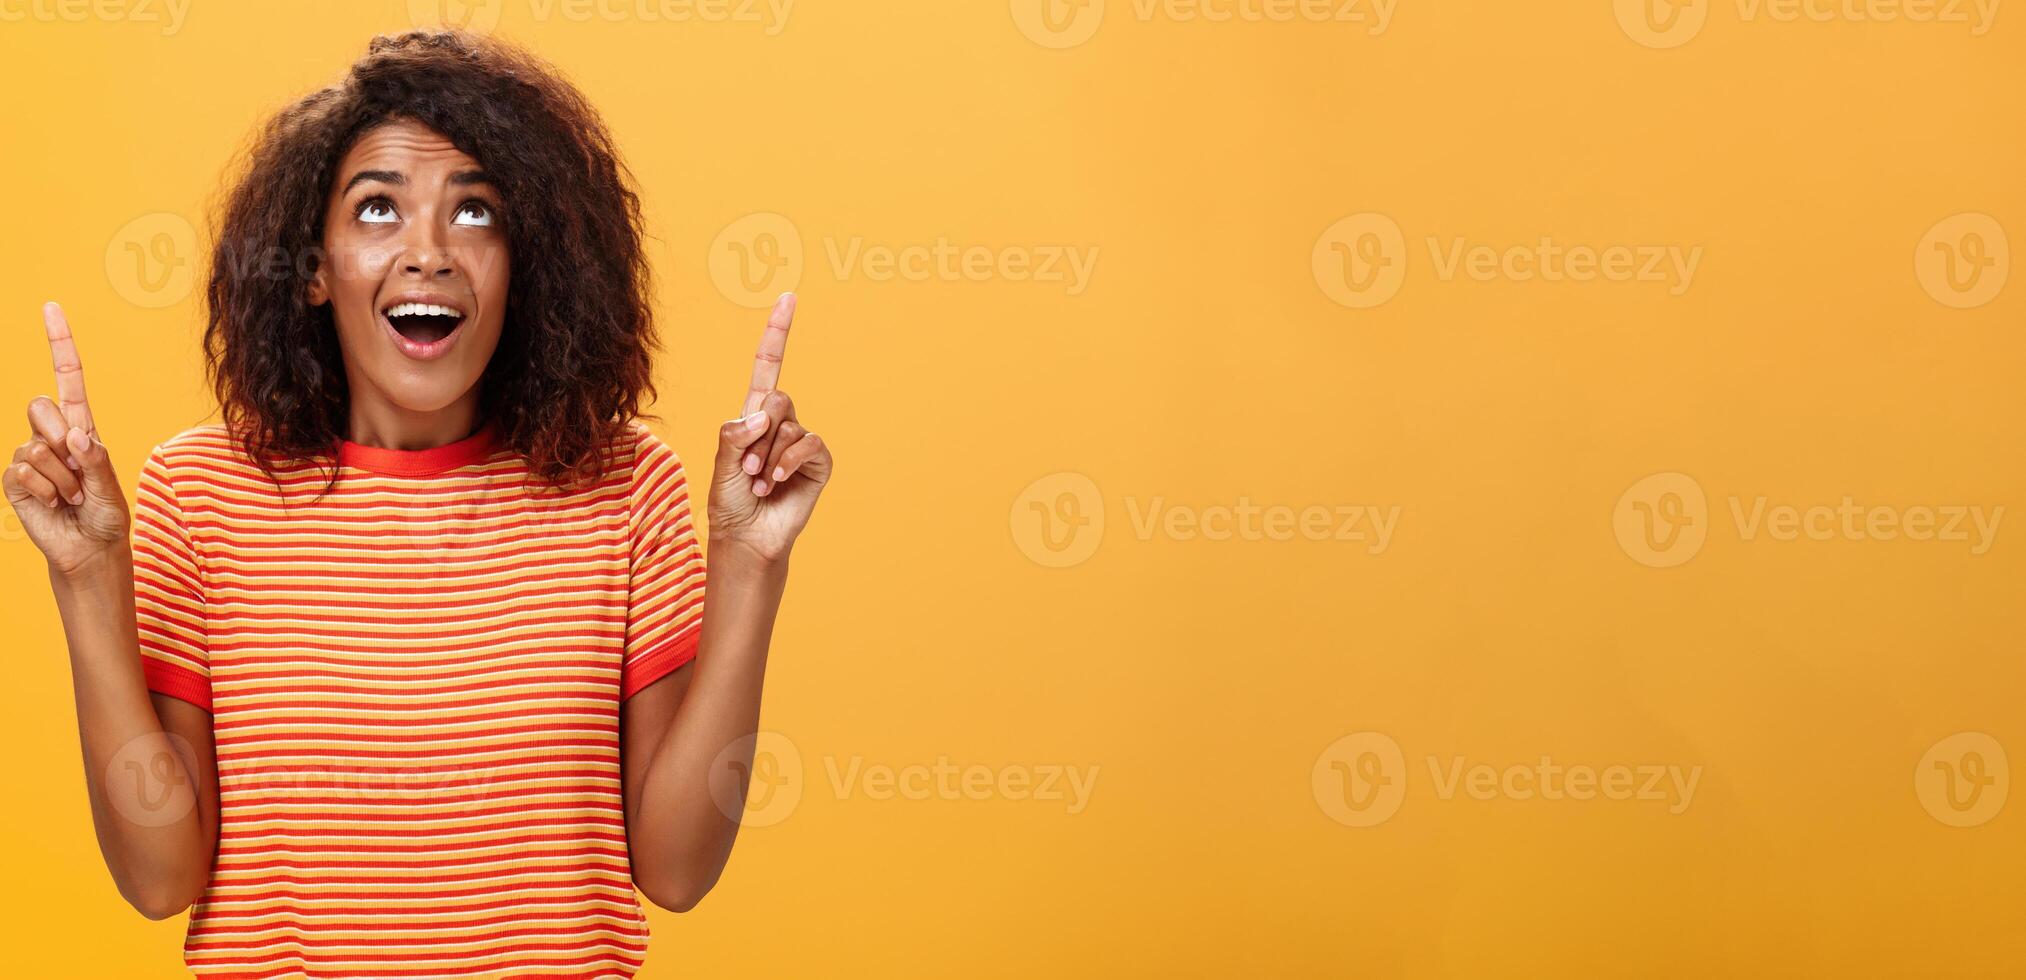 otimista feliz africano americano menina dizendo obrigado para Deus olhando e apontando acima satisfeito e despreocupado iniciando dia dentro produtivo caminho ser Deleitado com por sorte chance sobre laranja fundo foto